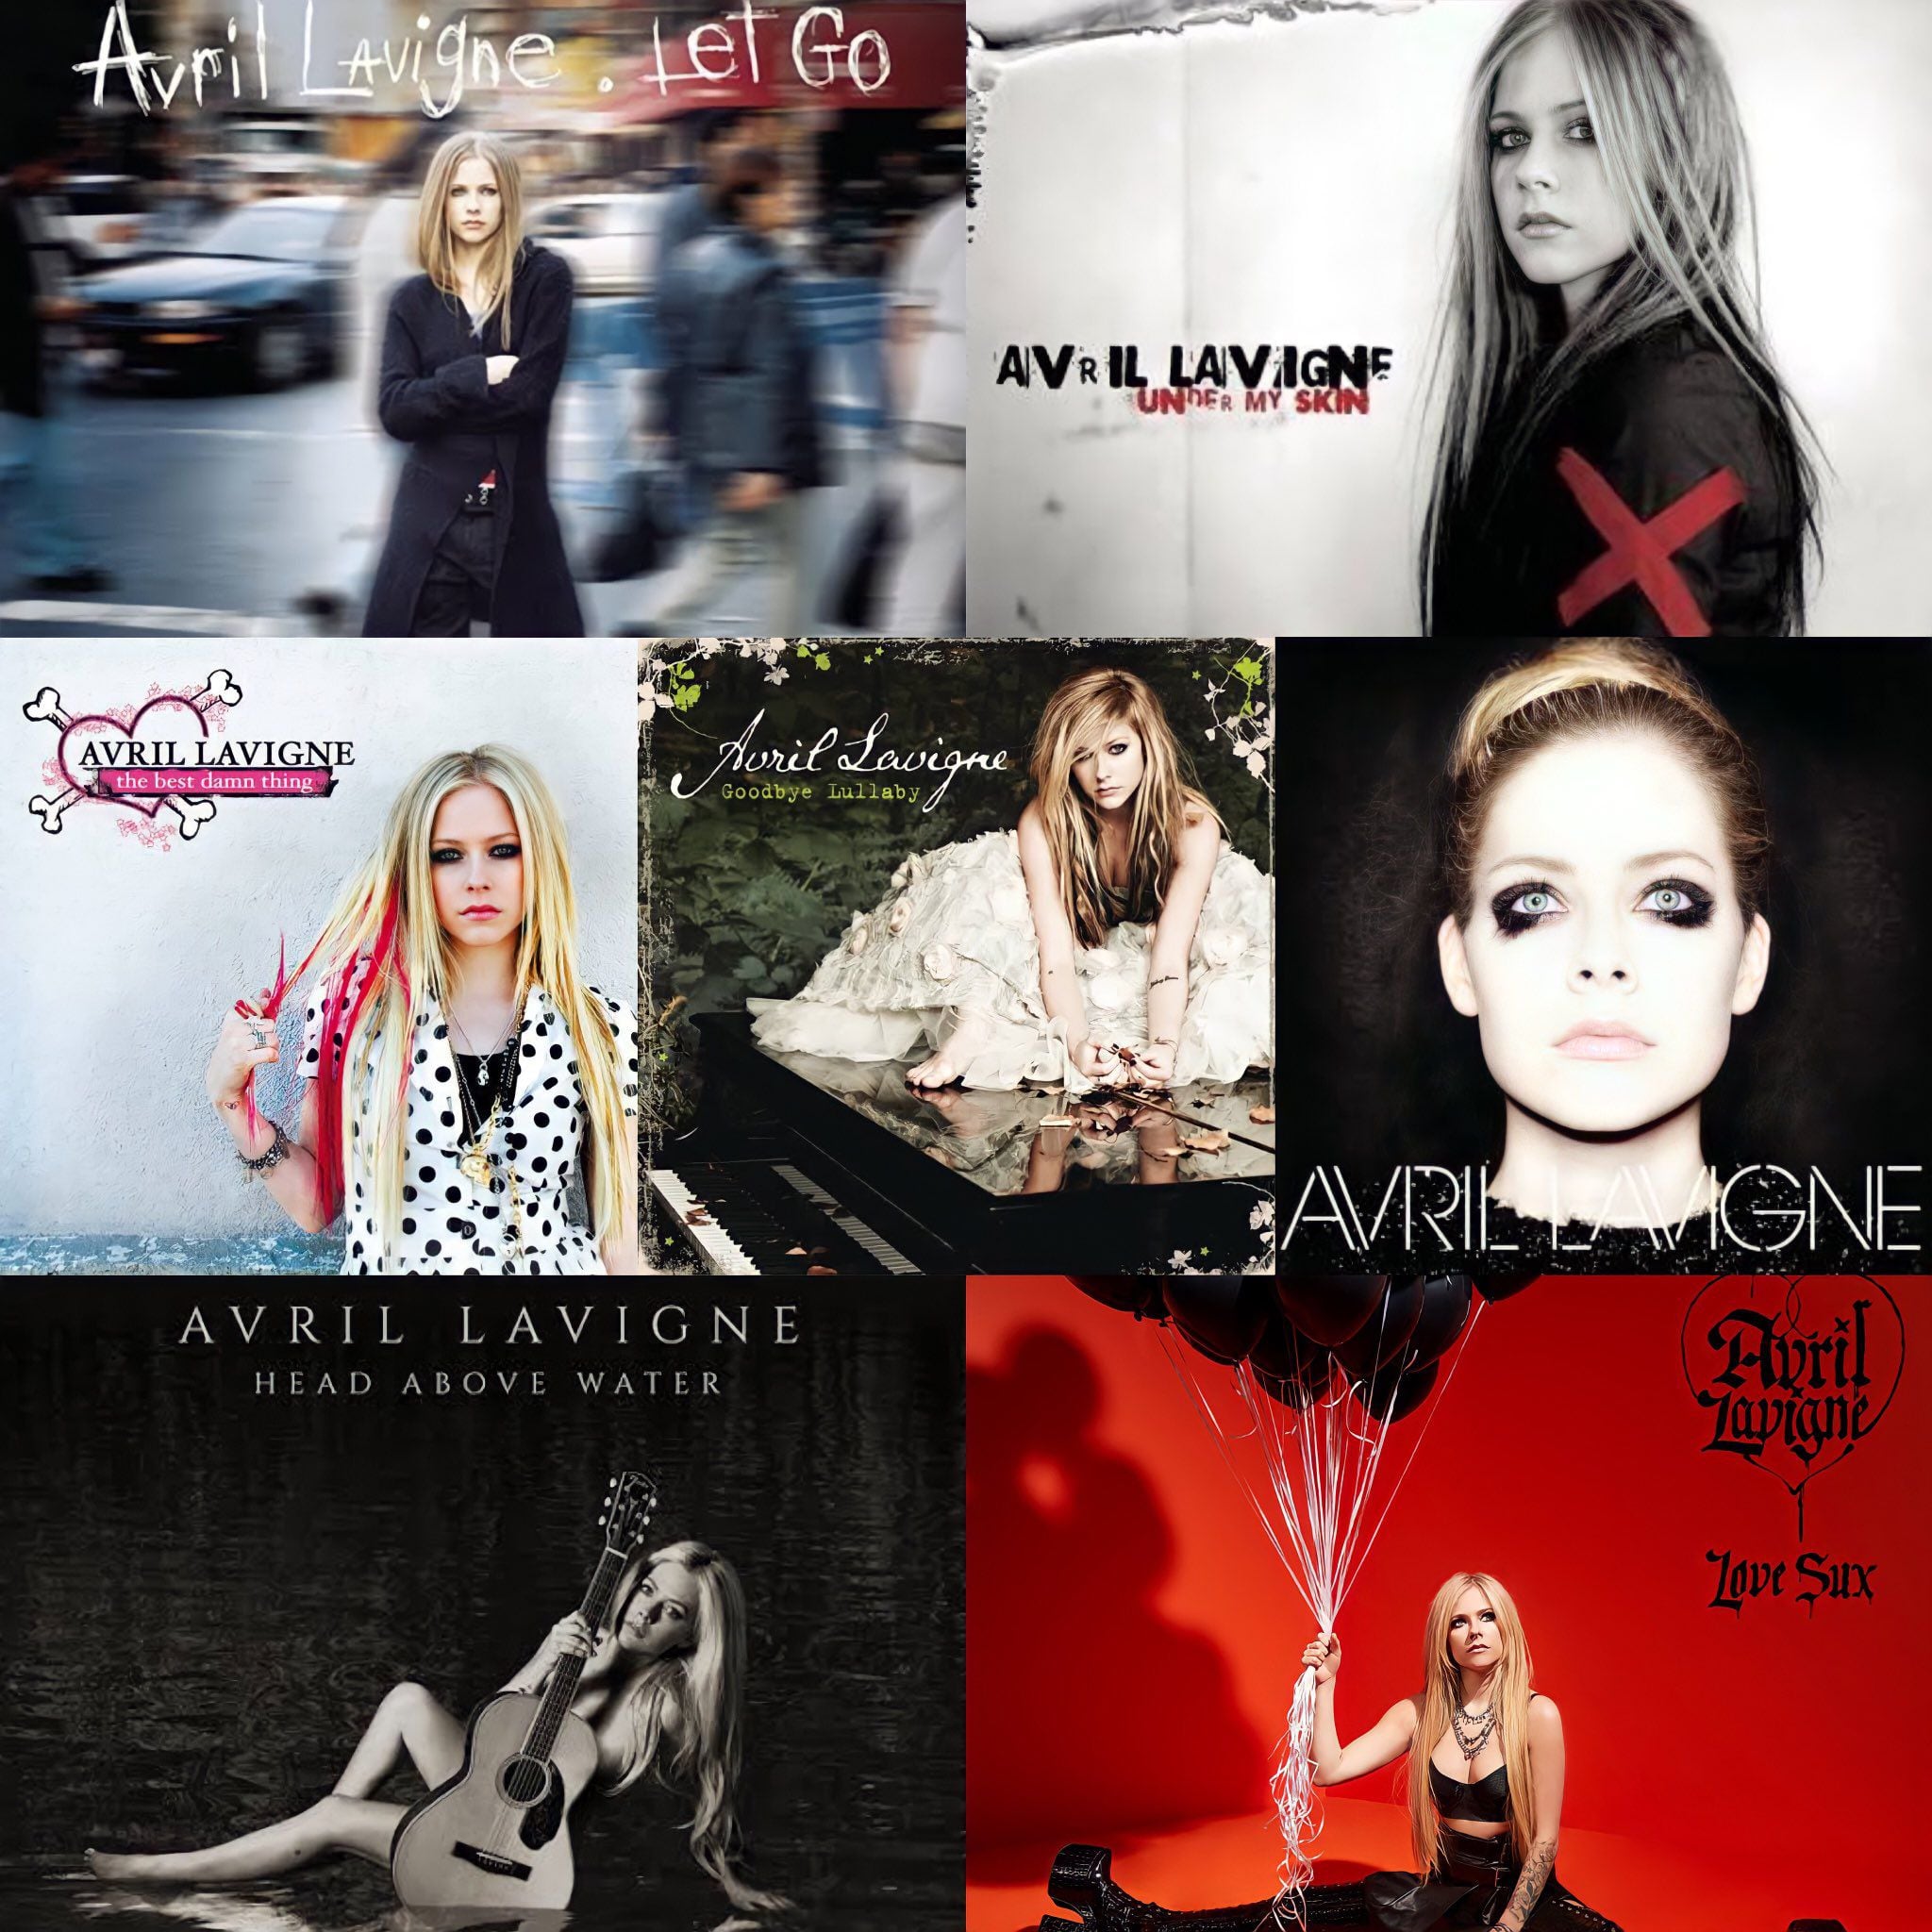 Discografía de Avril Lavigne.